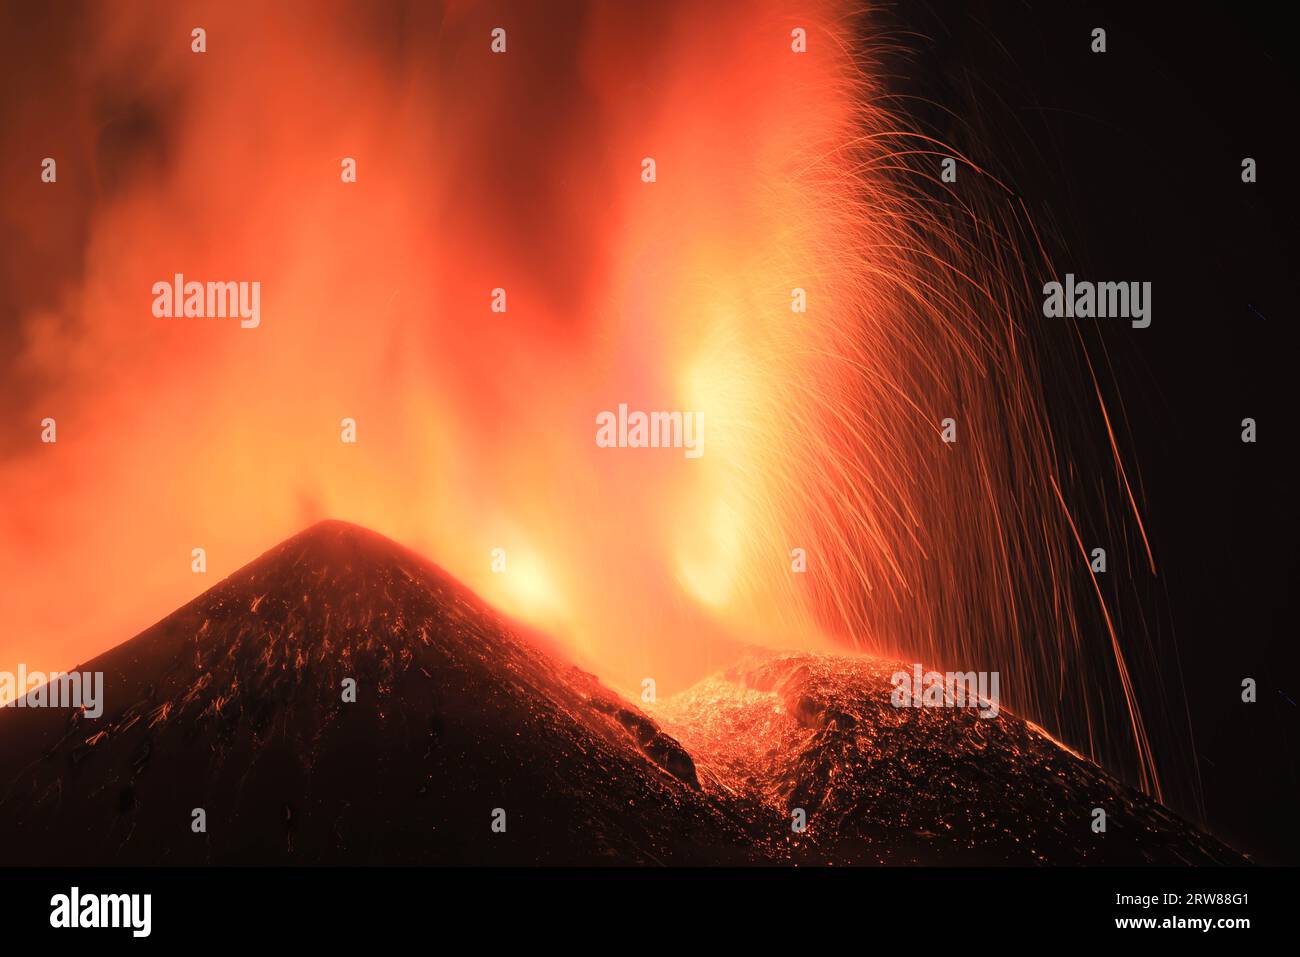 Etna - Esplosione di lava intensa  sul vulcano etna dal cratere  durante un eruzione vista di notte con silhouette del cratere in controluce Stock Photo